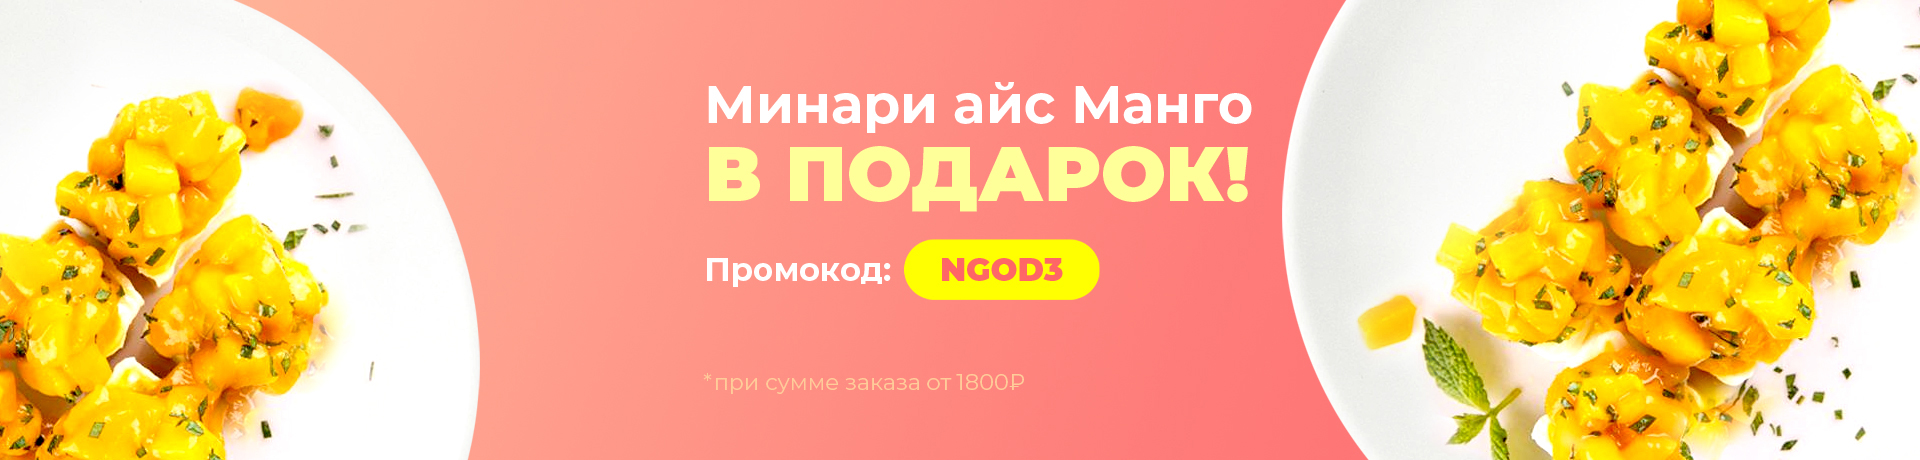 Минари Айс за 0 рублей, промокод: NGOD3